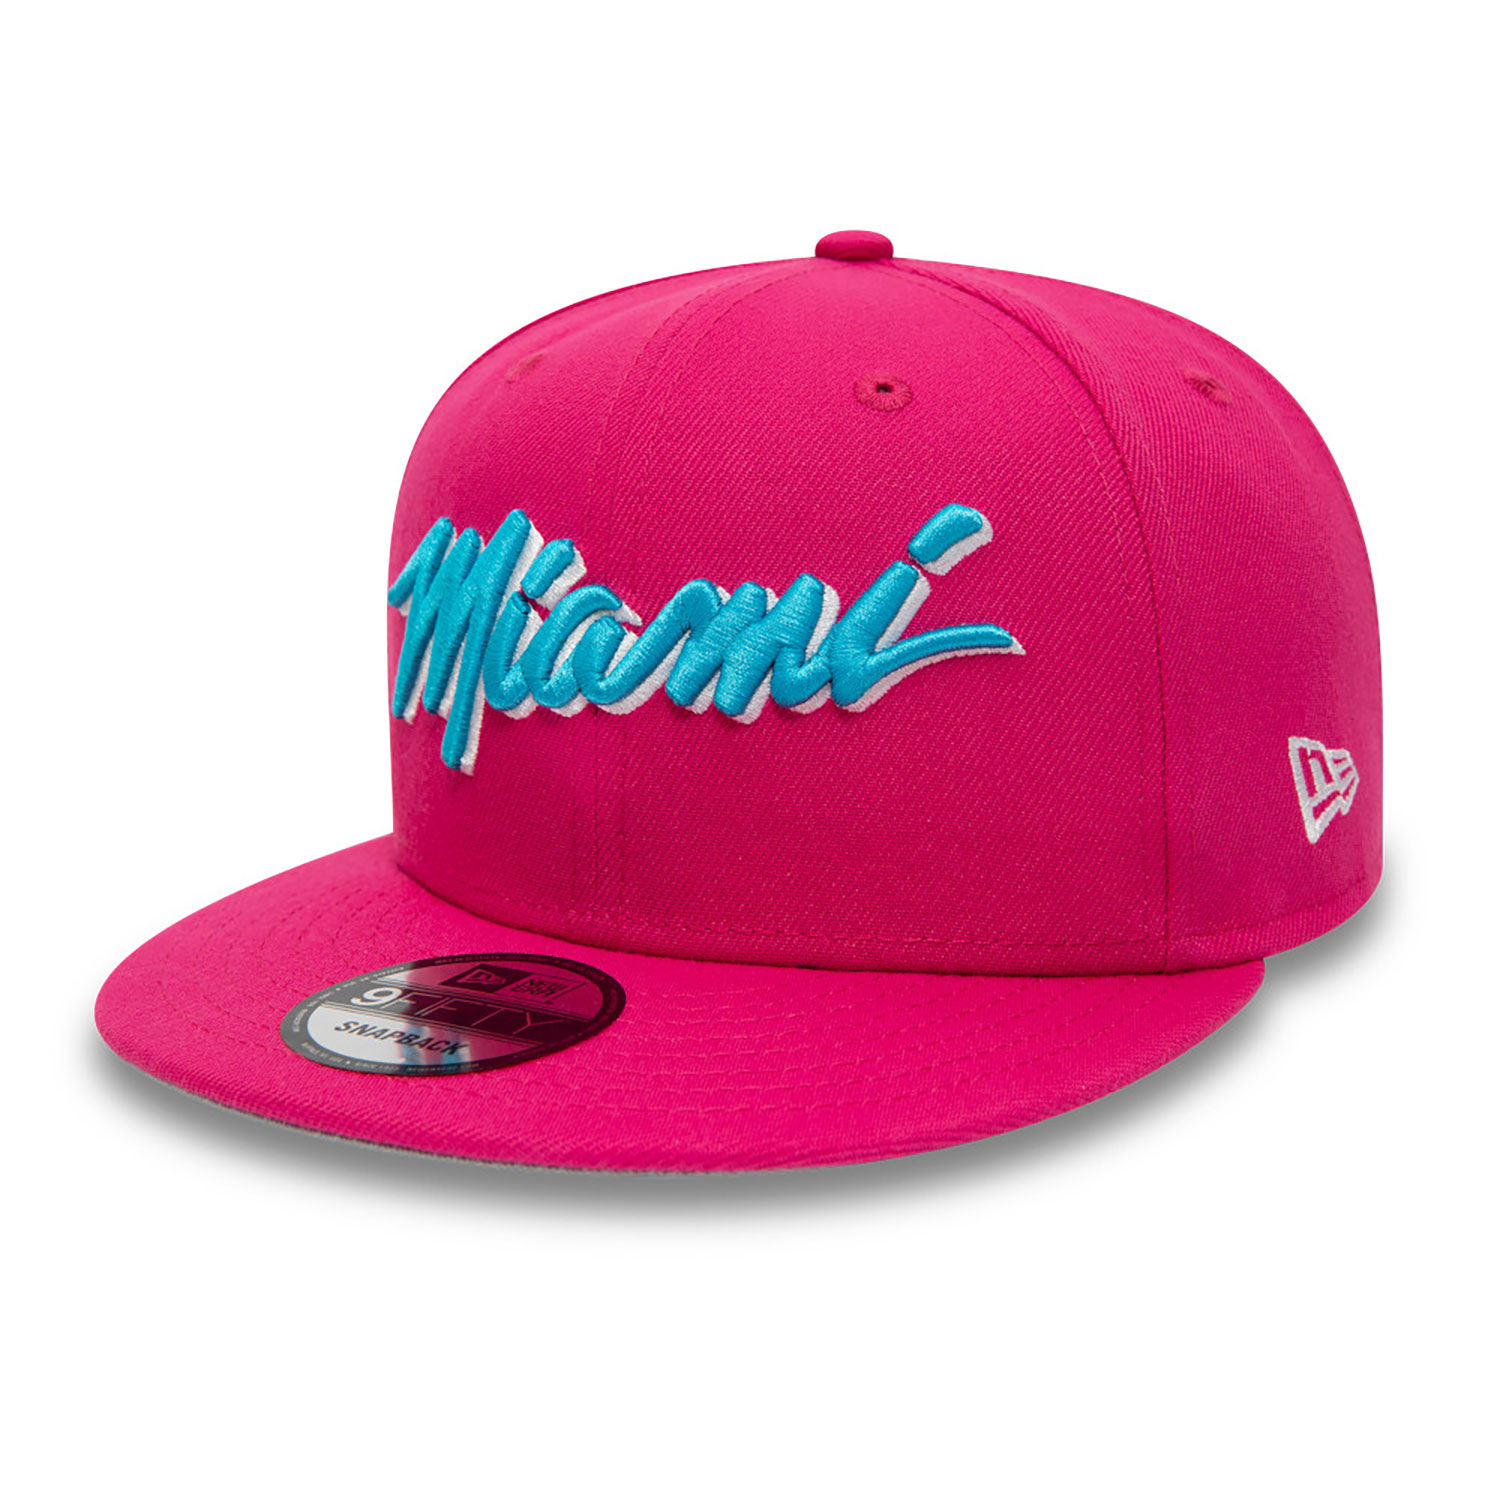 New Era Miami Heat Vice Edition White 9Fifty Snapback Cap